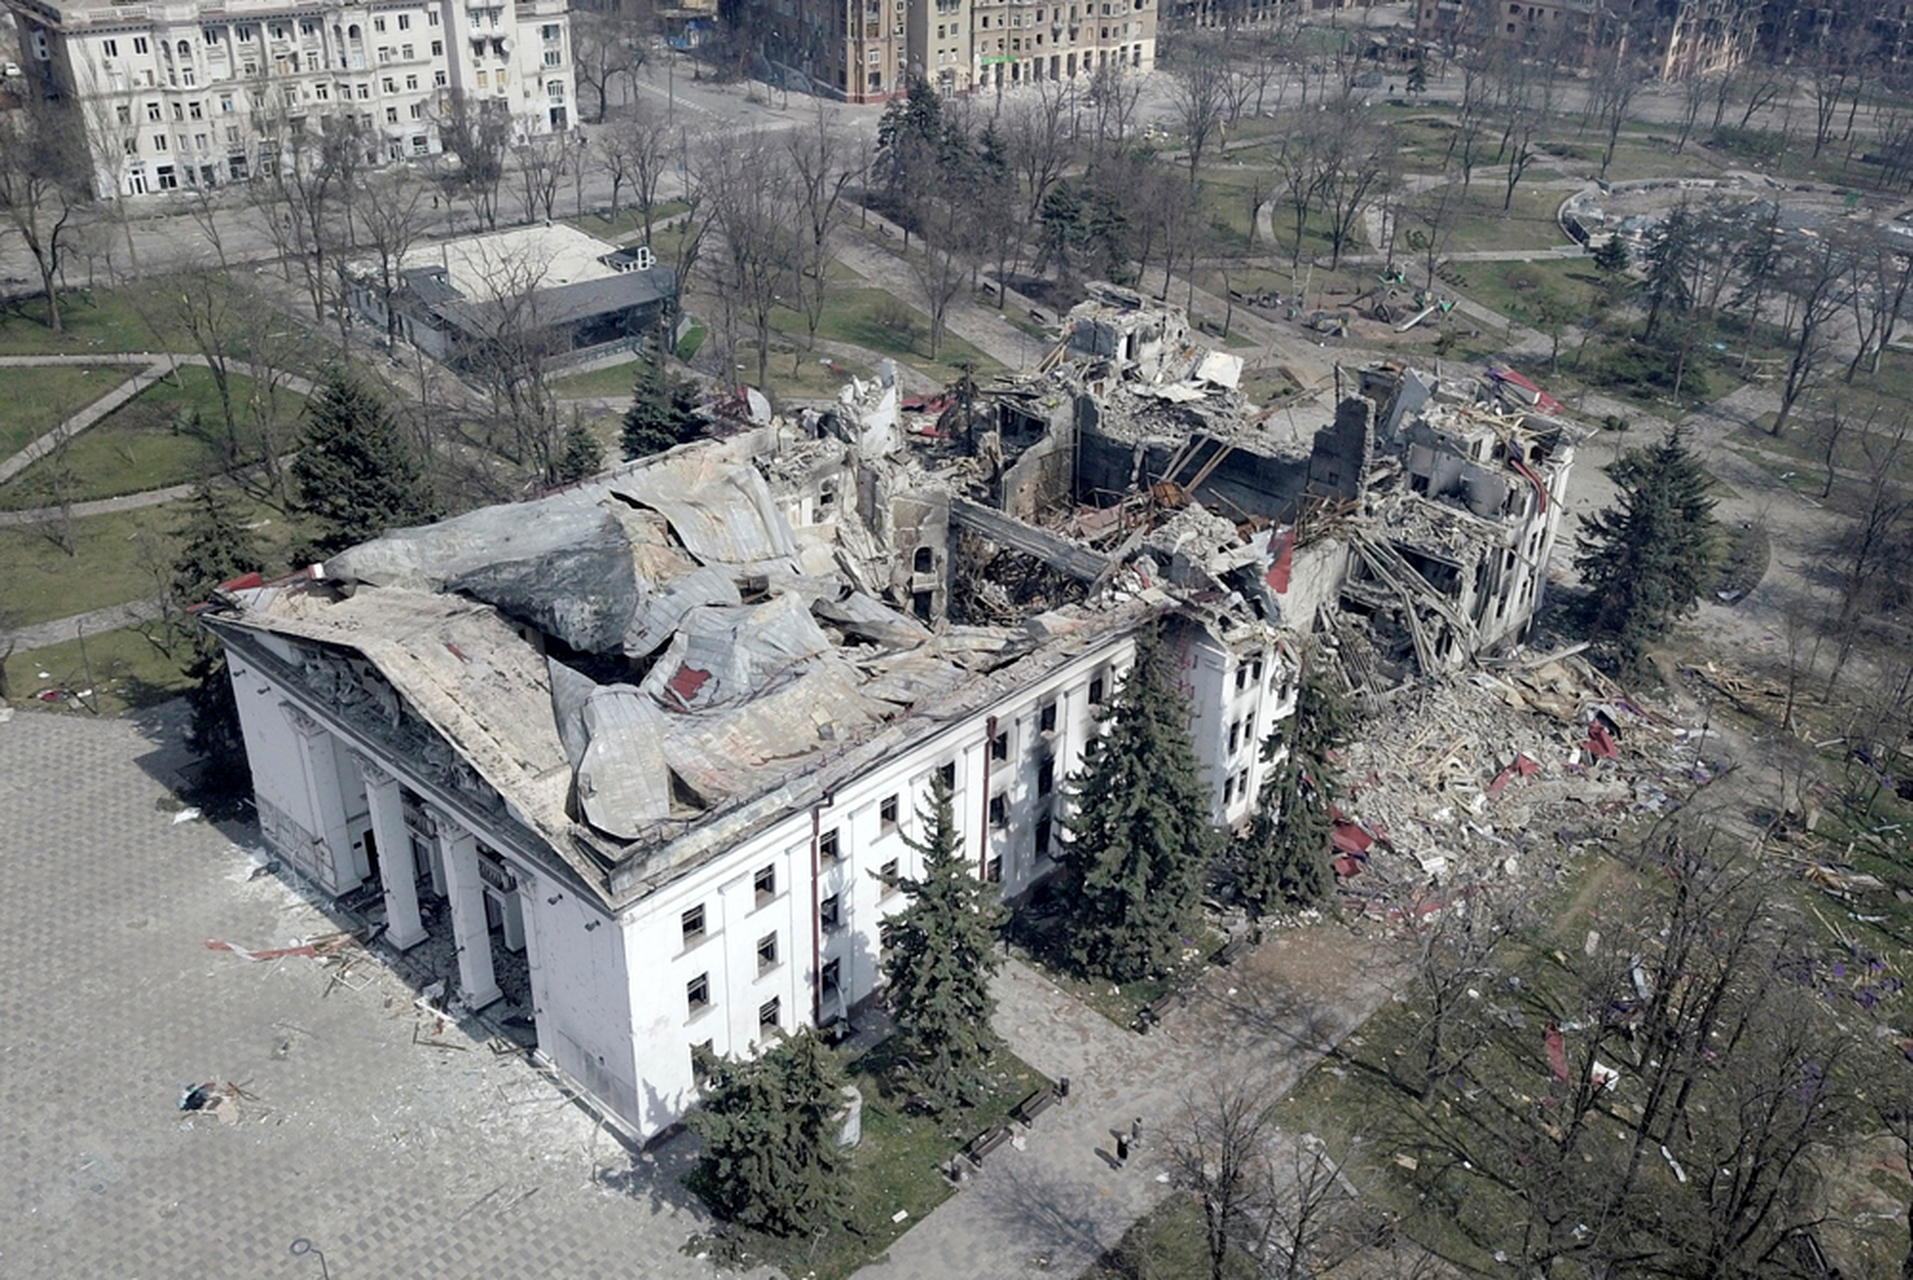 乌克兰总统府内景图片